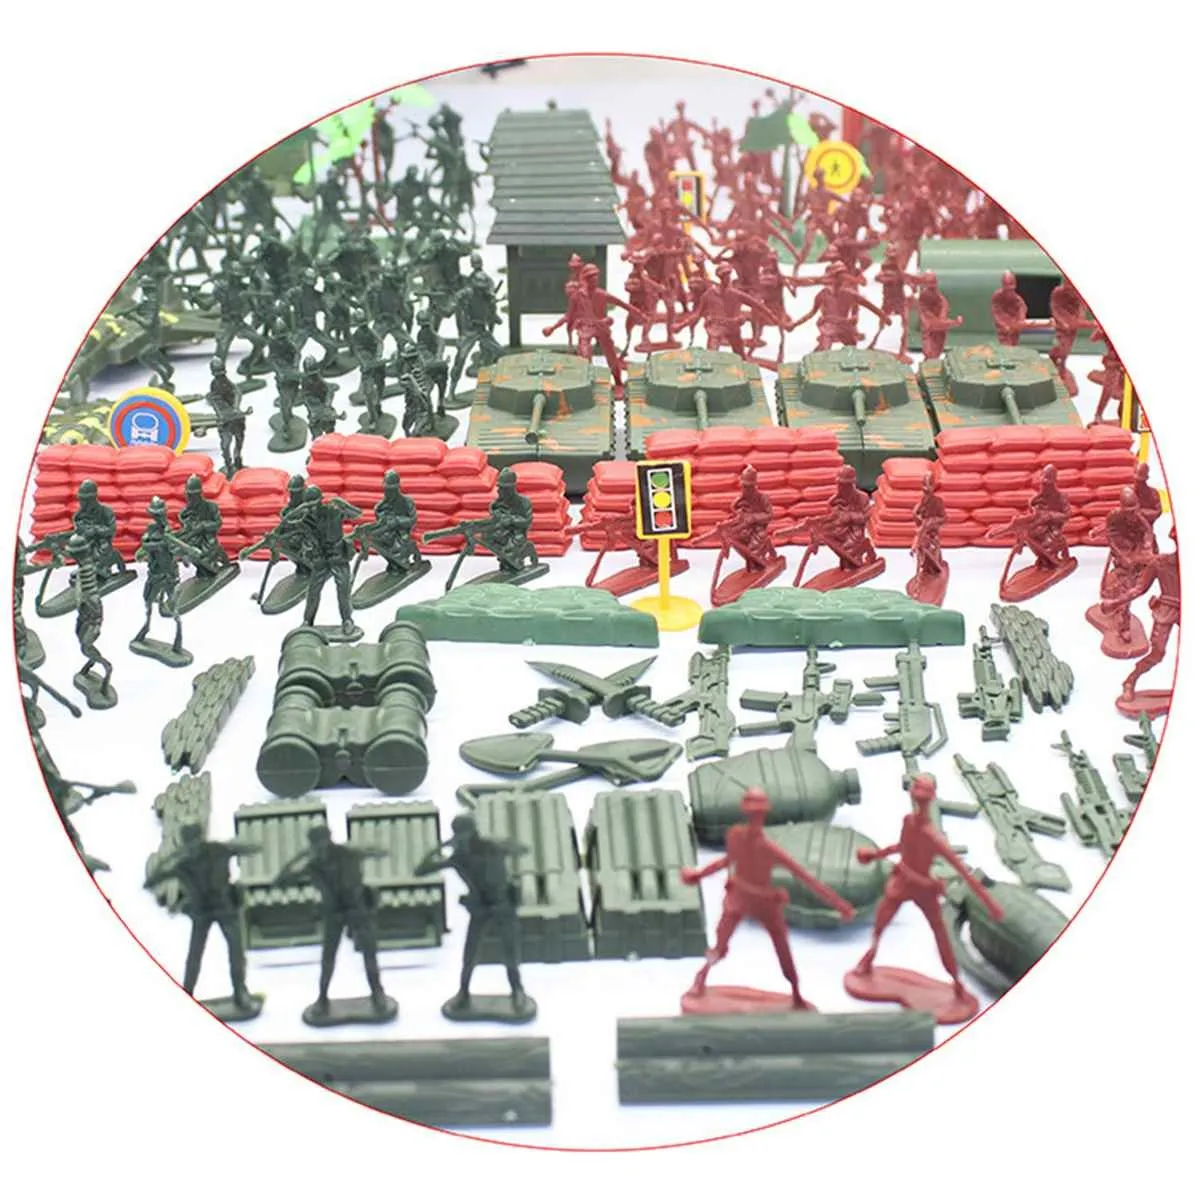 Bambini /Set di plastica Soldato militare Modello Playset Toy Toy Army Base Base Accessori Decor Reput Toys3314163